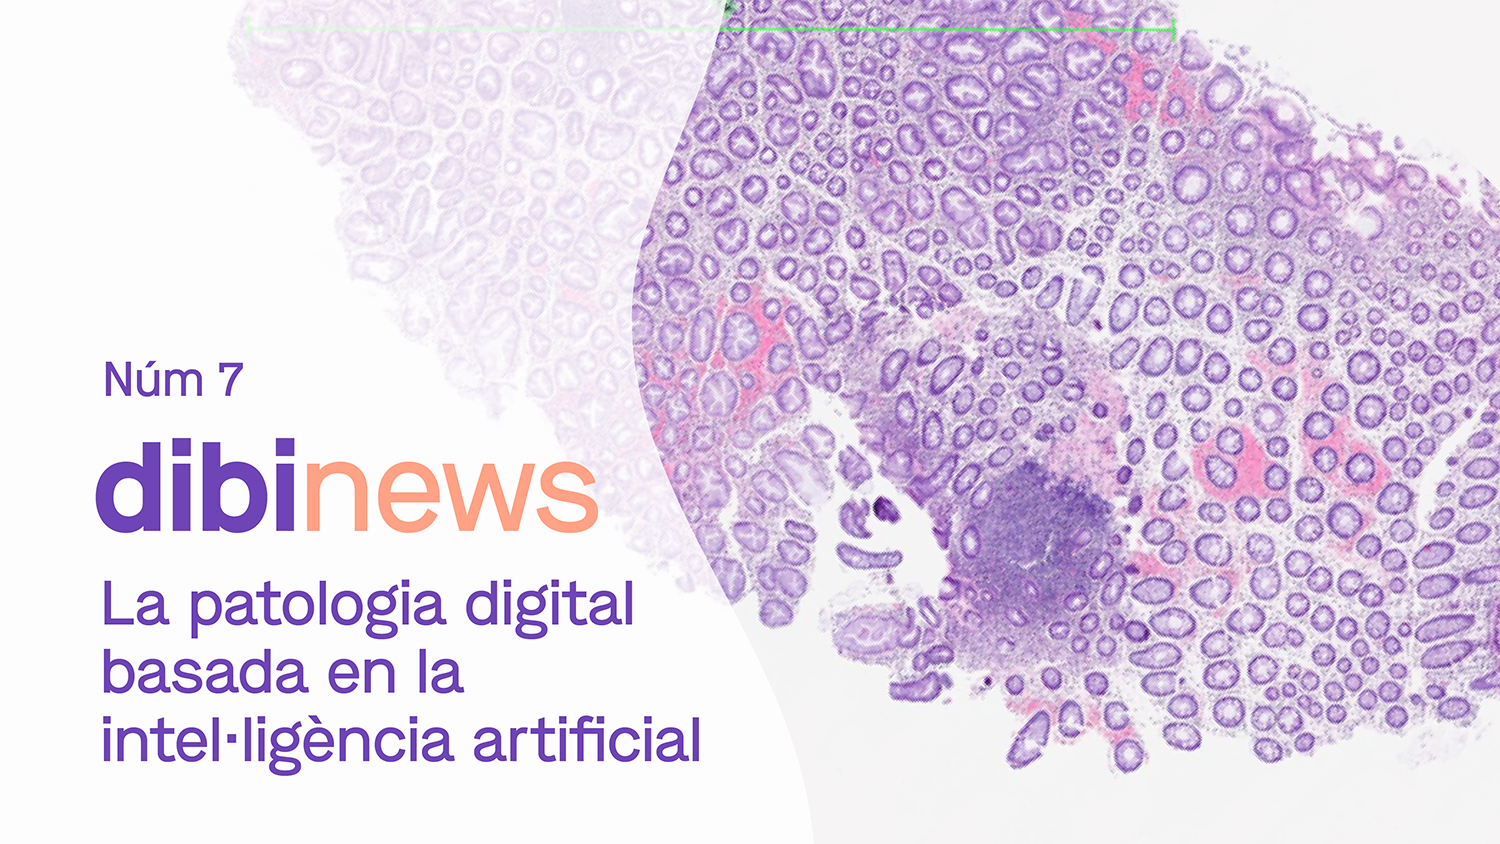 dibinews núm. 7 ·  La patología digital basada en la inteligencia artificial